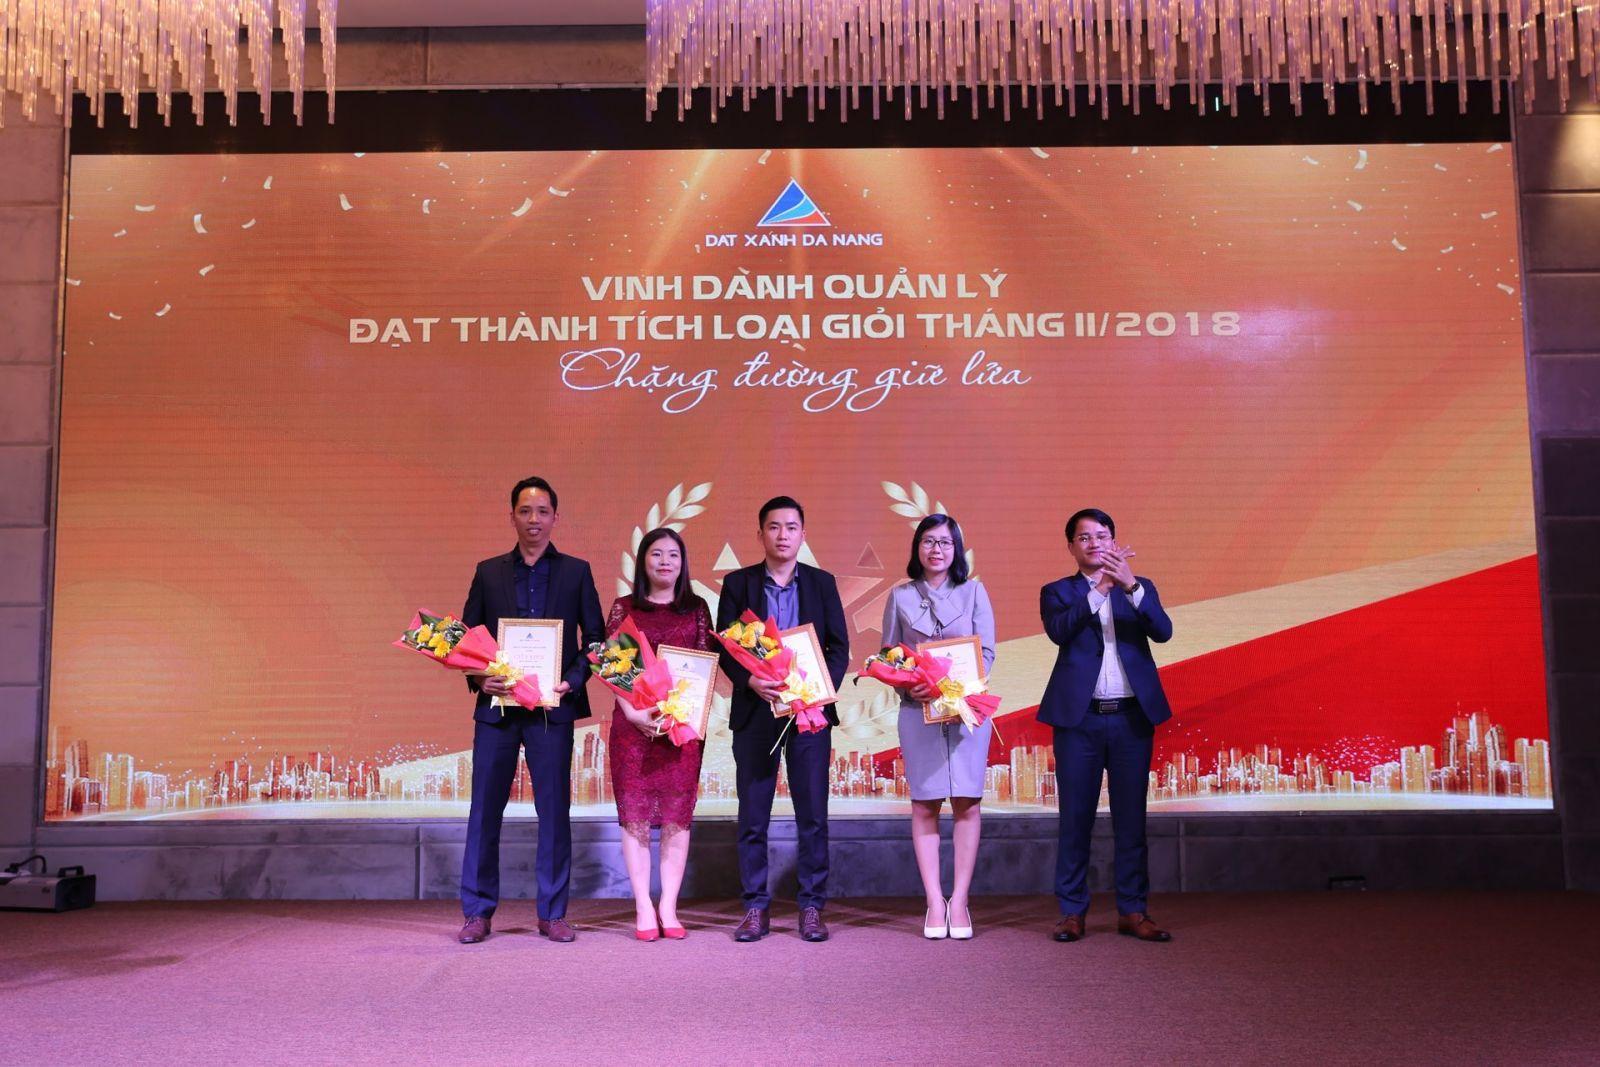 CHƯƠNG TRÌNH “TỔNG KẾT 6 THÁNG CUỐI NĂM 2018” VỚI CHỦ ĐỀ : “CHẶNG ĐƯỜNG GIỮ LỬA” - Viet Nam Smart City